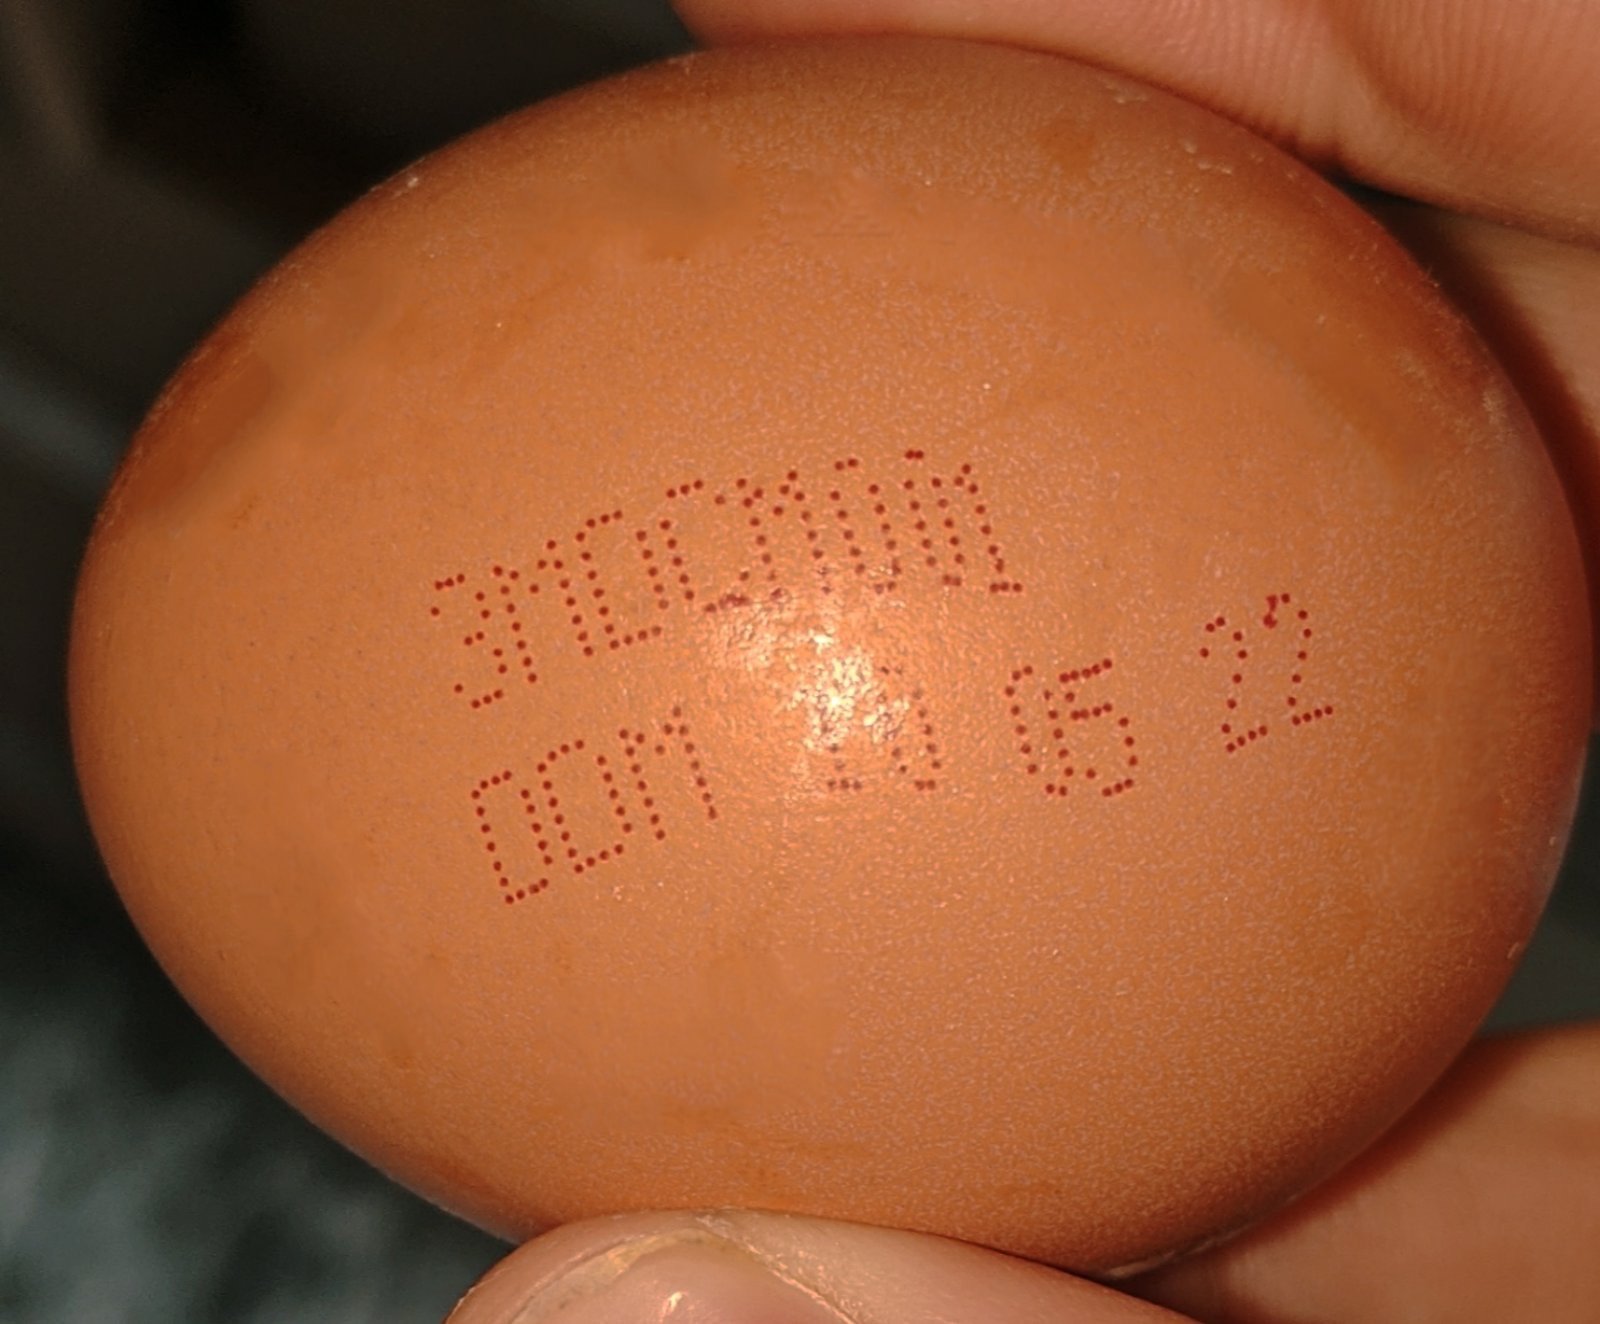 (ФОТО) Нашли сальмонеллу. В Молдове из продажи изымают партию куриных яиц